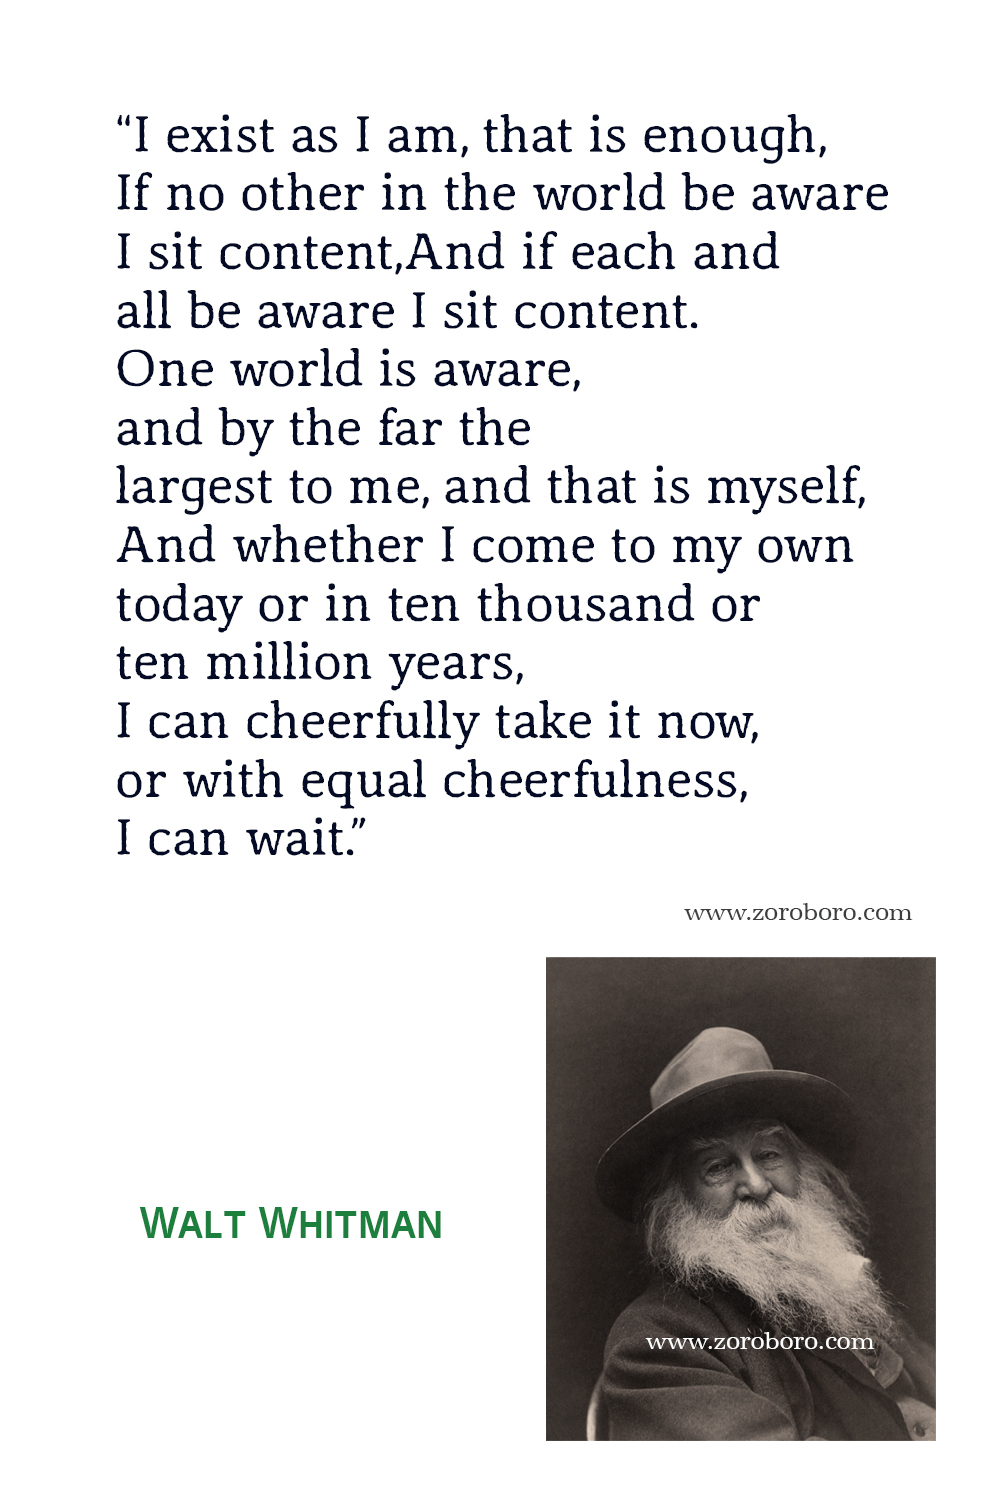 Walt Whitman Quotes, Poet, Poetry, Walt Whitman Poems, Walt Whitman Books Quotes, Walt Whitman : Selected Poems, Walt Whitman Song of myself & Leaves of grass.